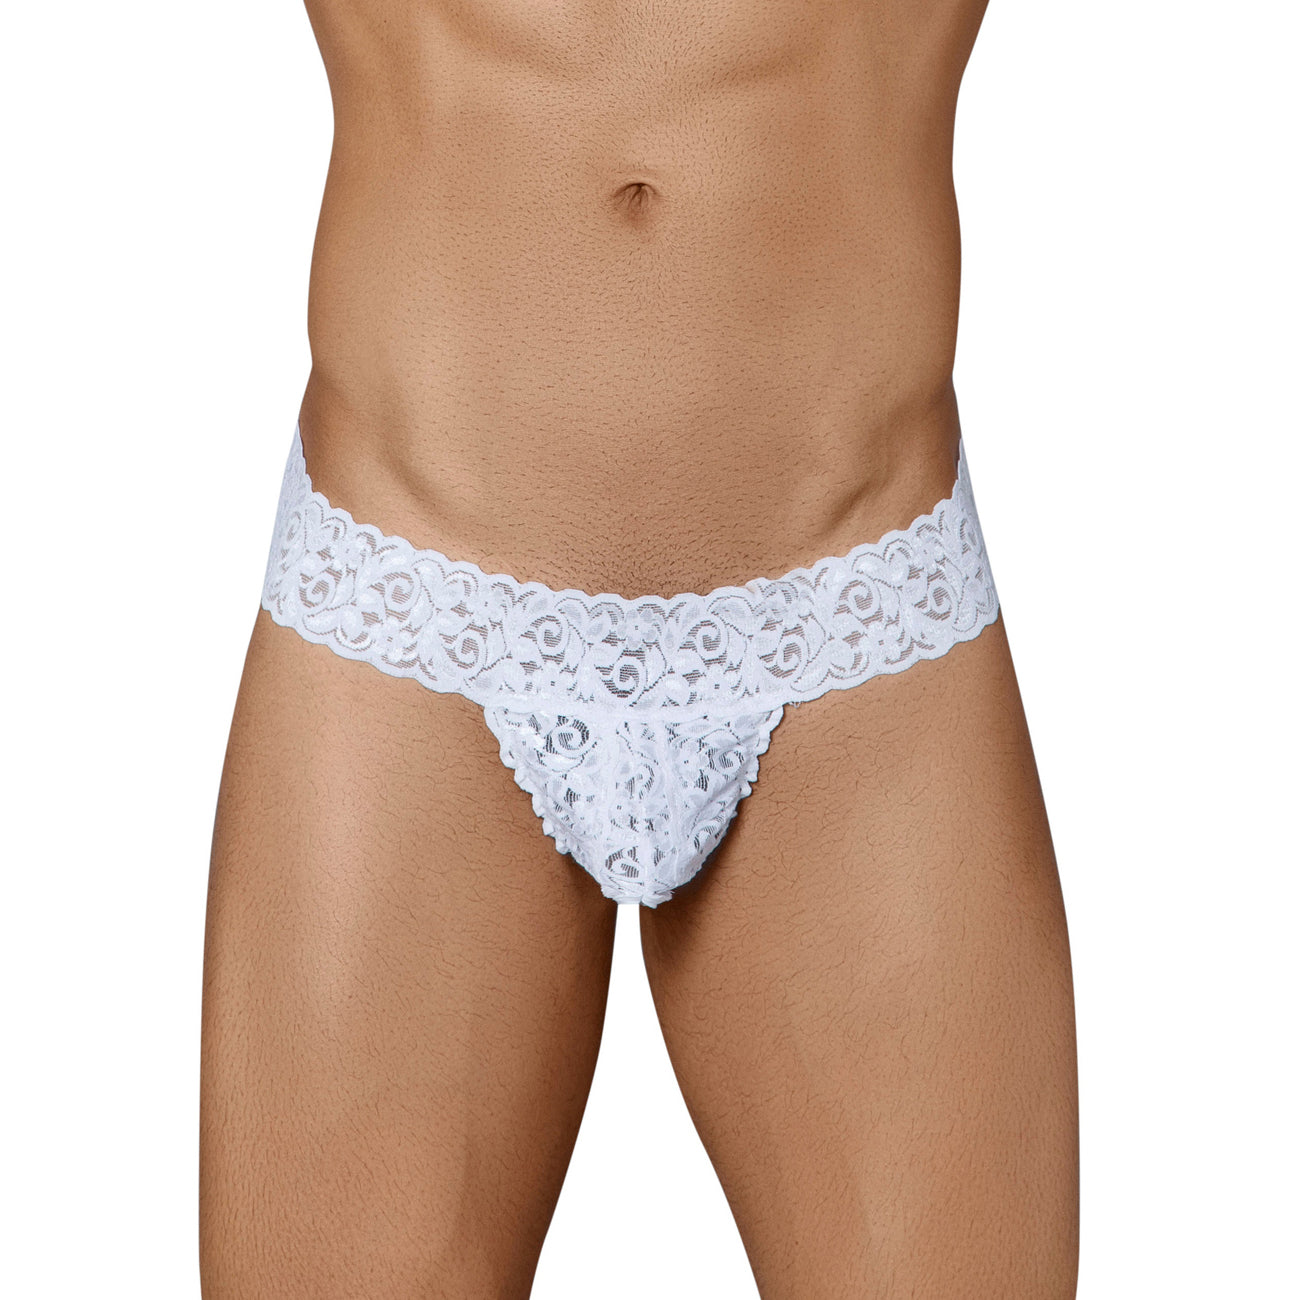 Buy Elegant Men's Lace Underwear: White Nylon Thongs - Bruchi Club